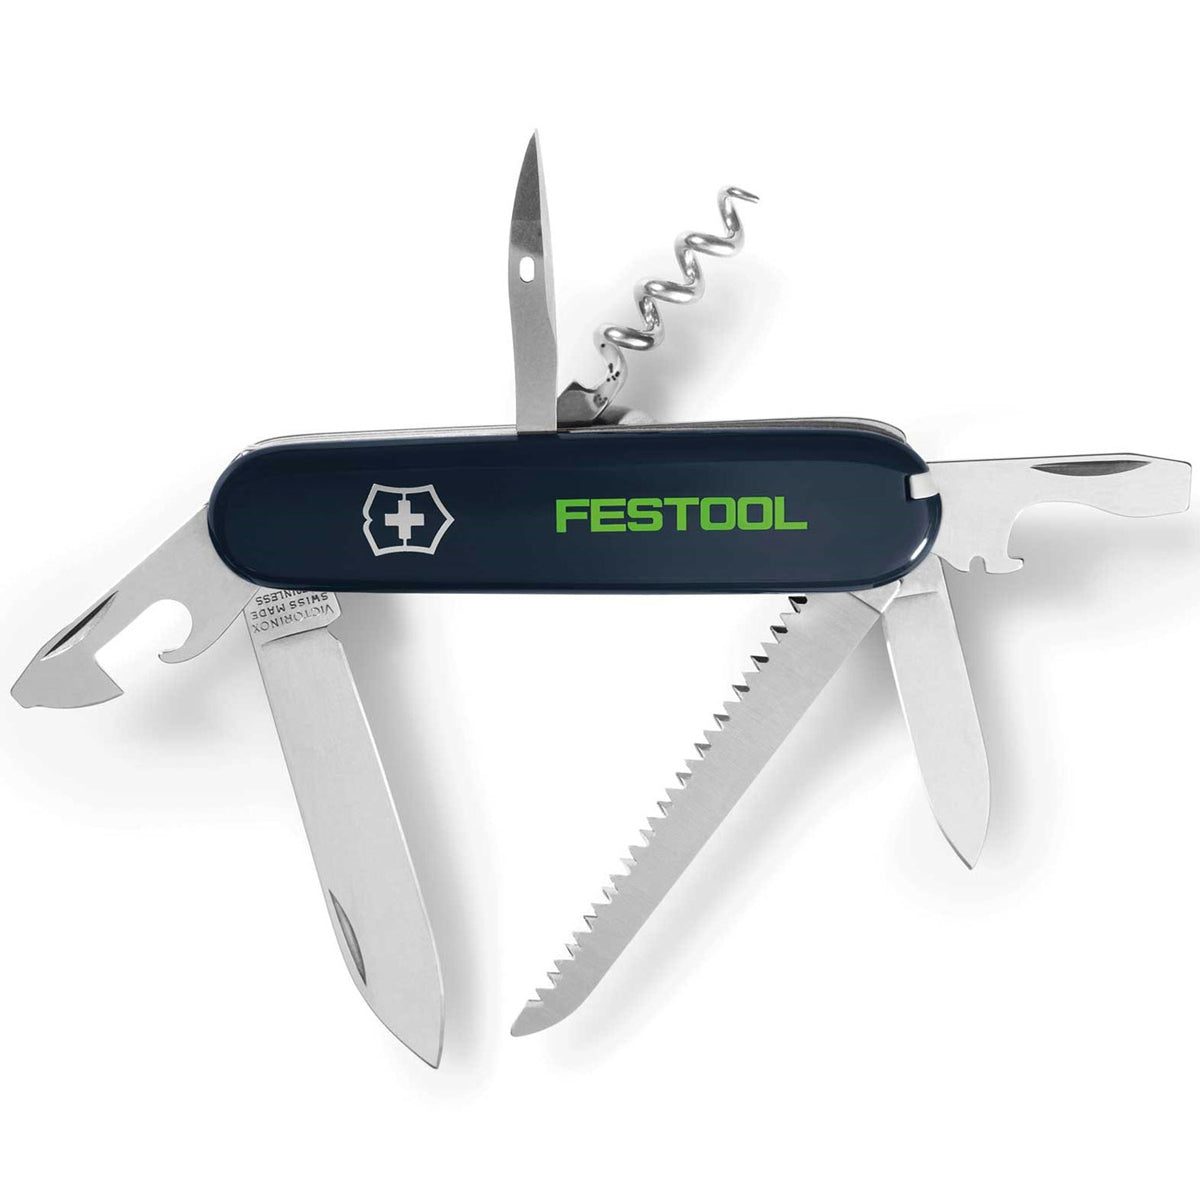 Festool 12 in 1 Victorinox Pen Knife 497898